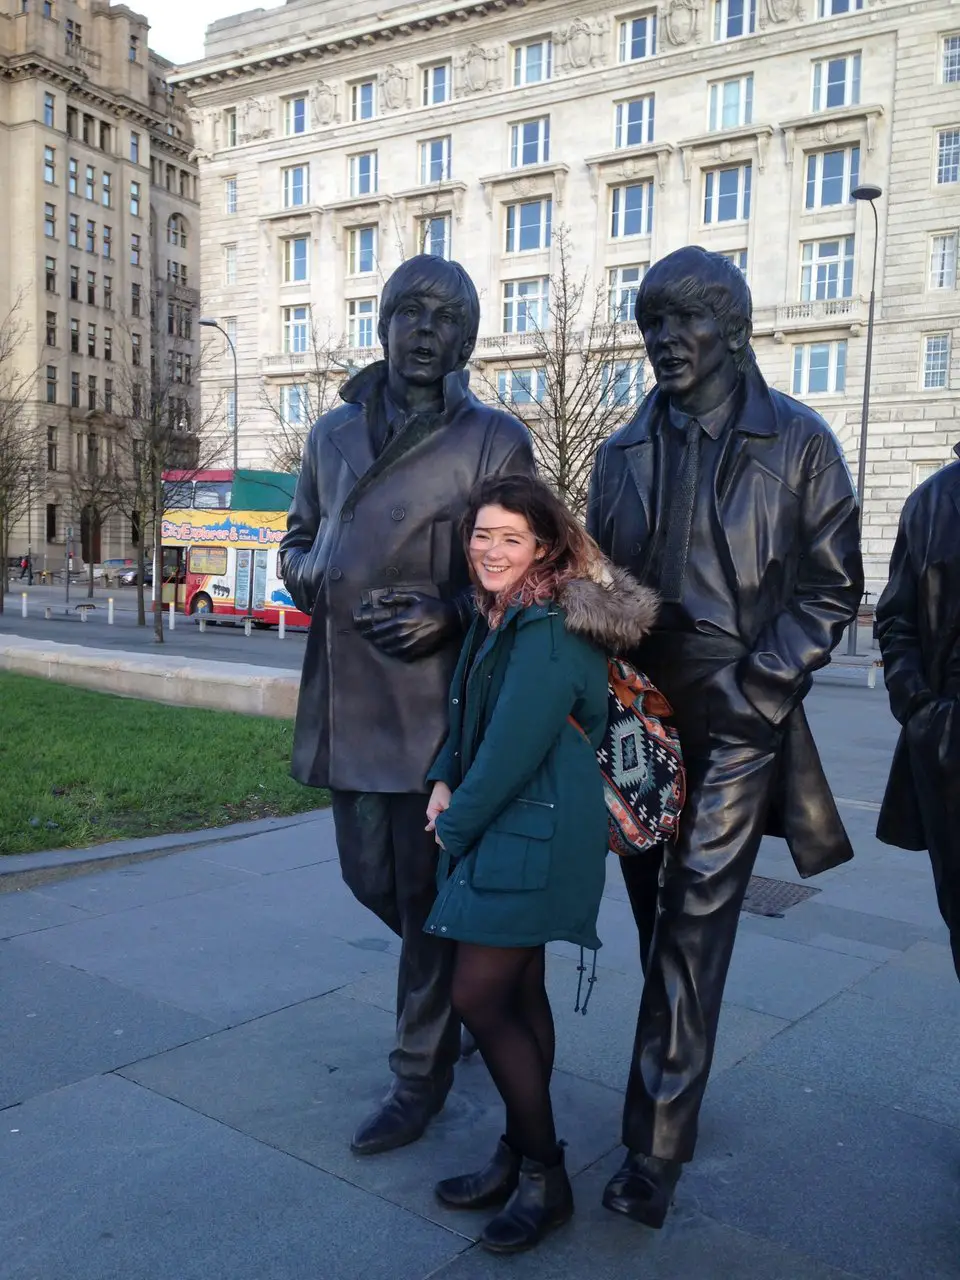 Ella at the Liverpool Beatles statue